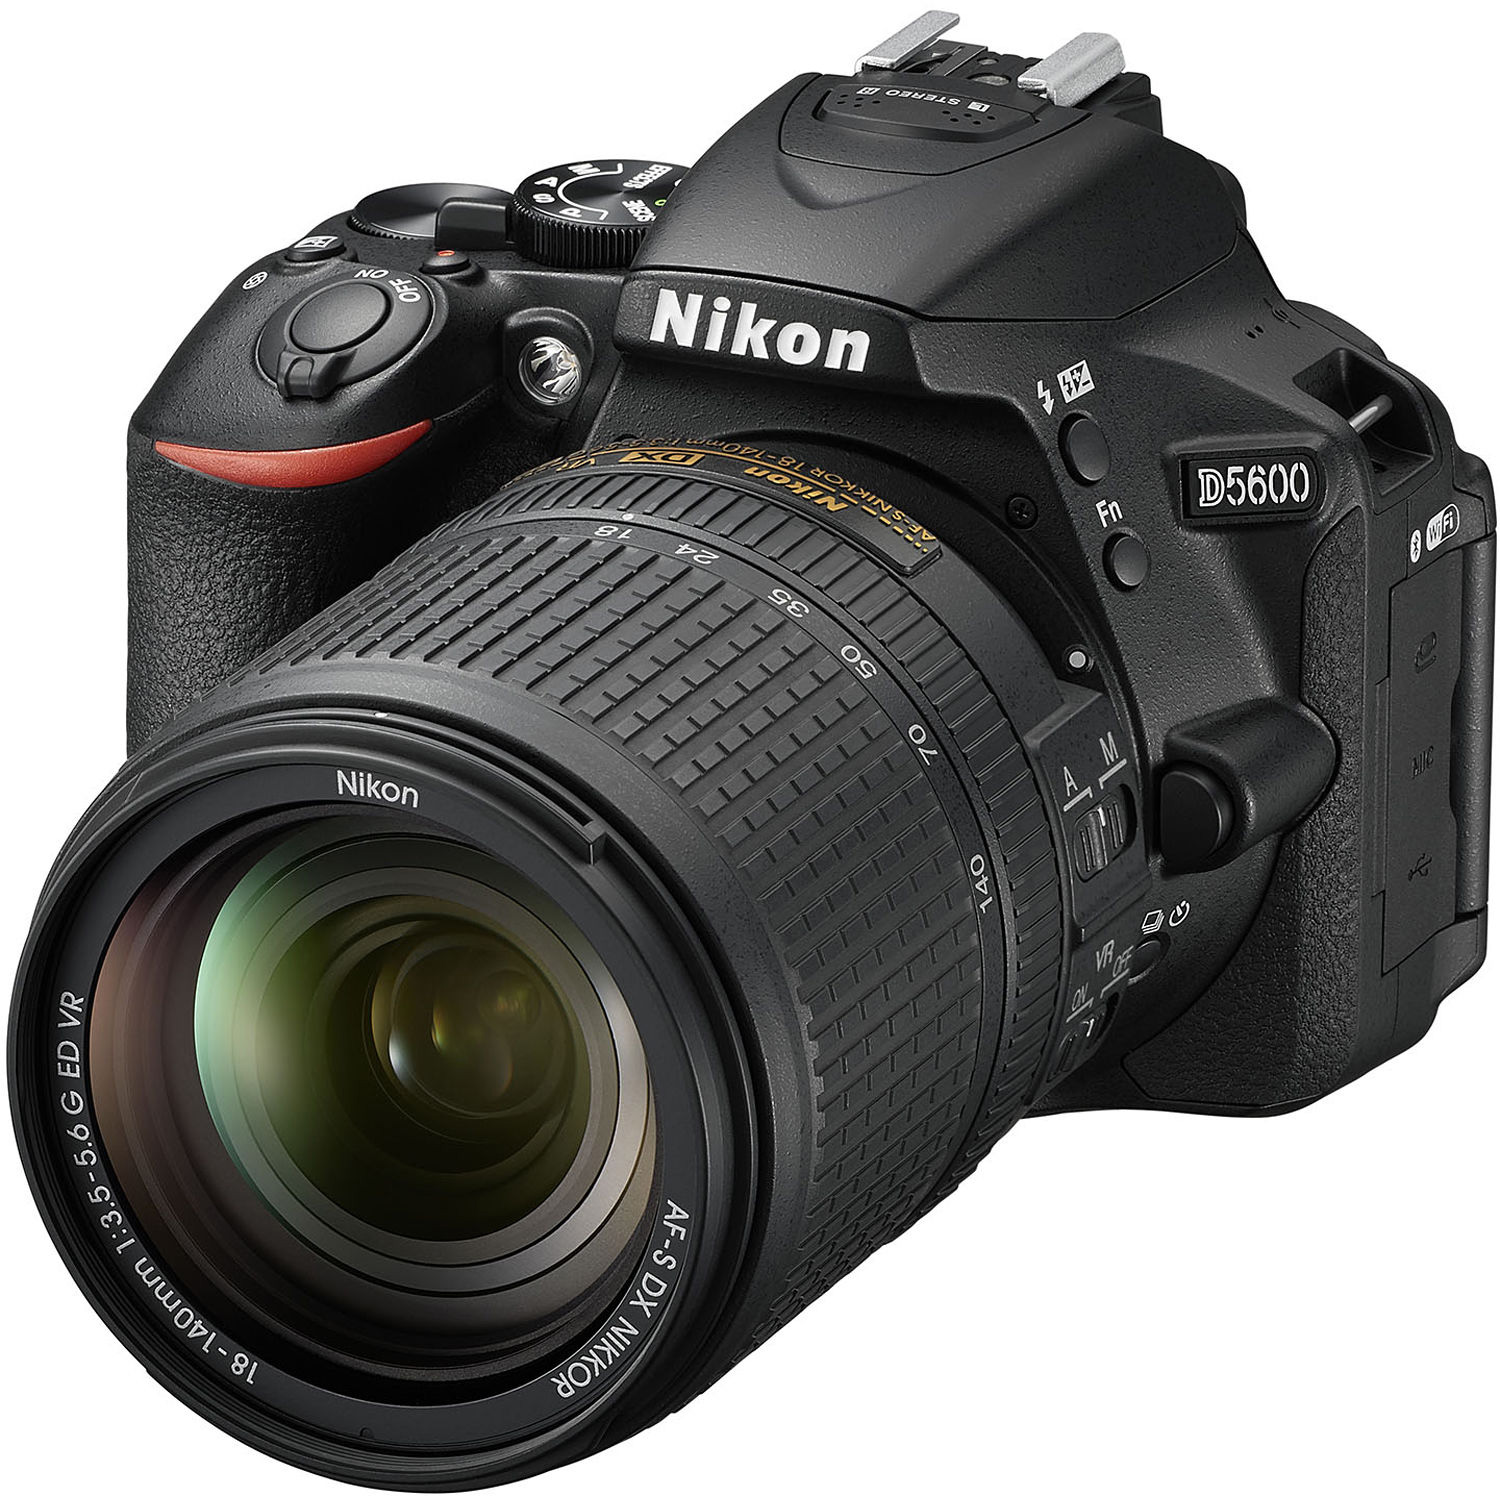 Máy ảnh kỹ thuật số Nikon D5600 24.2MP DX-Format là sản phẩm hoàn hảo cho những ai đam mê nhiếp ảnh, từ những bức ảnh chân dung đến cảnh thiên nhiên. Với nhiều tính năng ưu việt, được trang bị cho chất lượng hình ảnh siêu nét và màu sắc tươi trẻ, chiếc máy này sẽ làm bạn hài lòng. 